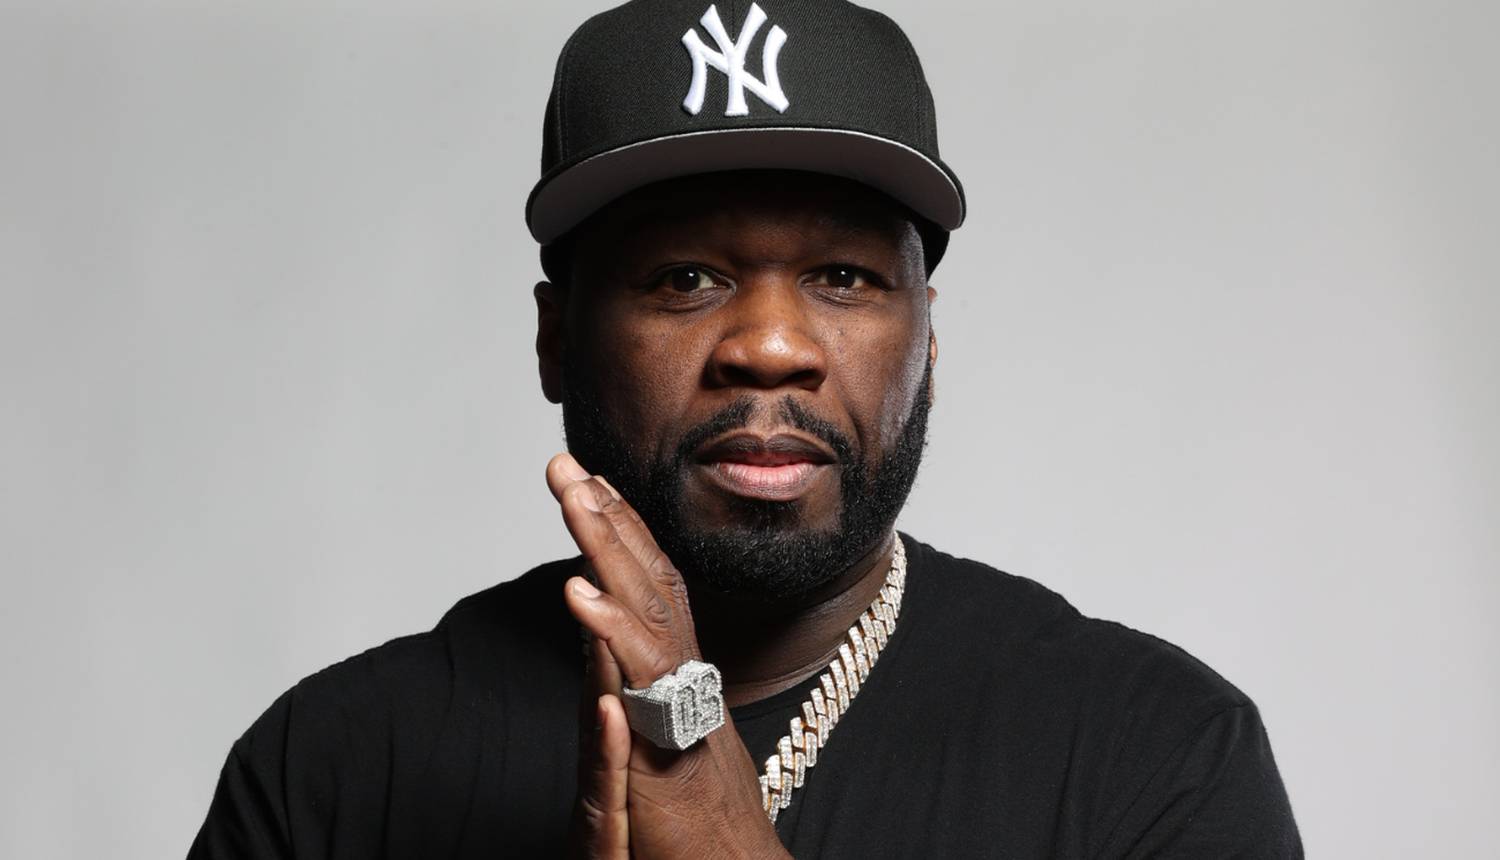 U prodaji su karte za koncert 50 Centa u Zagrebu: 'Ove cijene su očekivane za svjetsku zvijezdu'